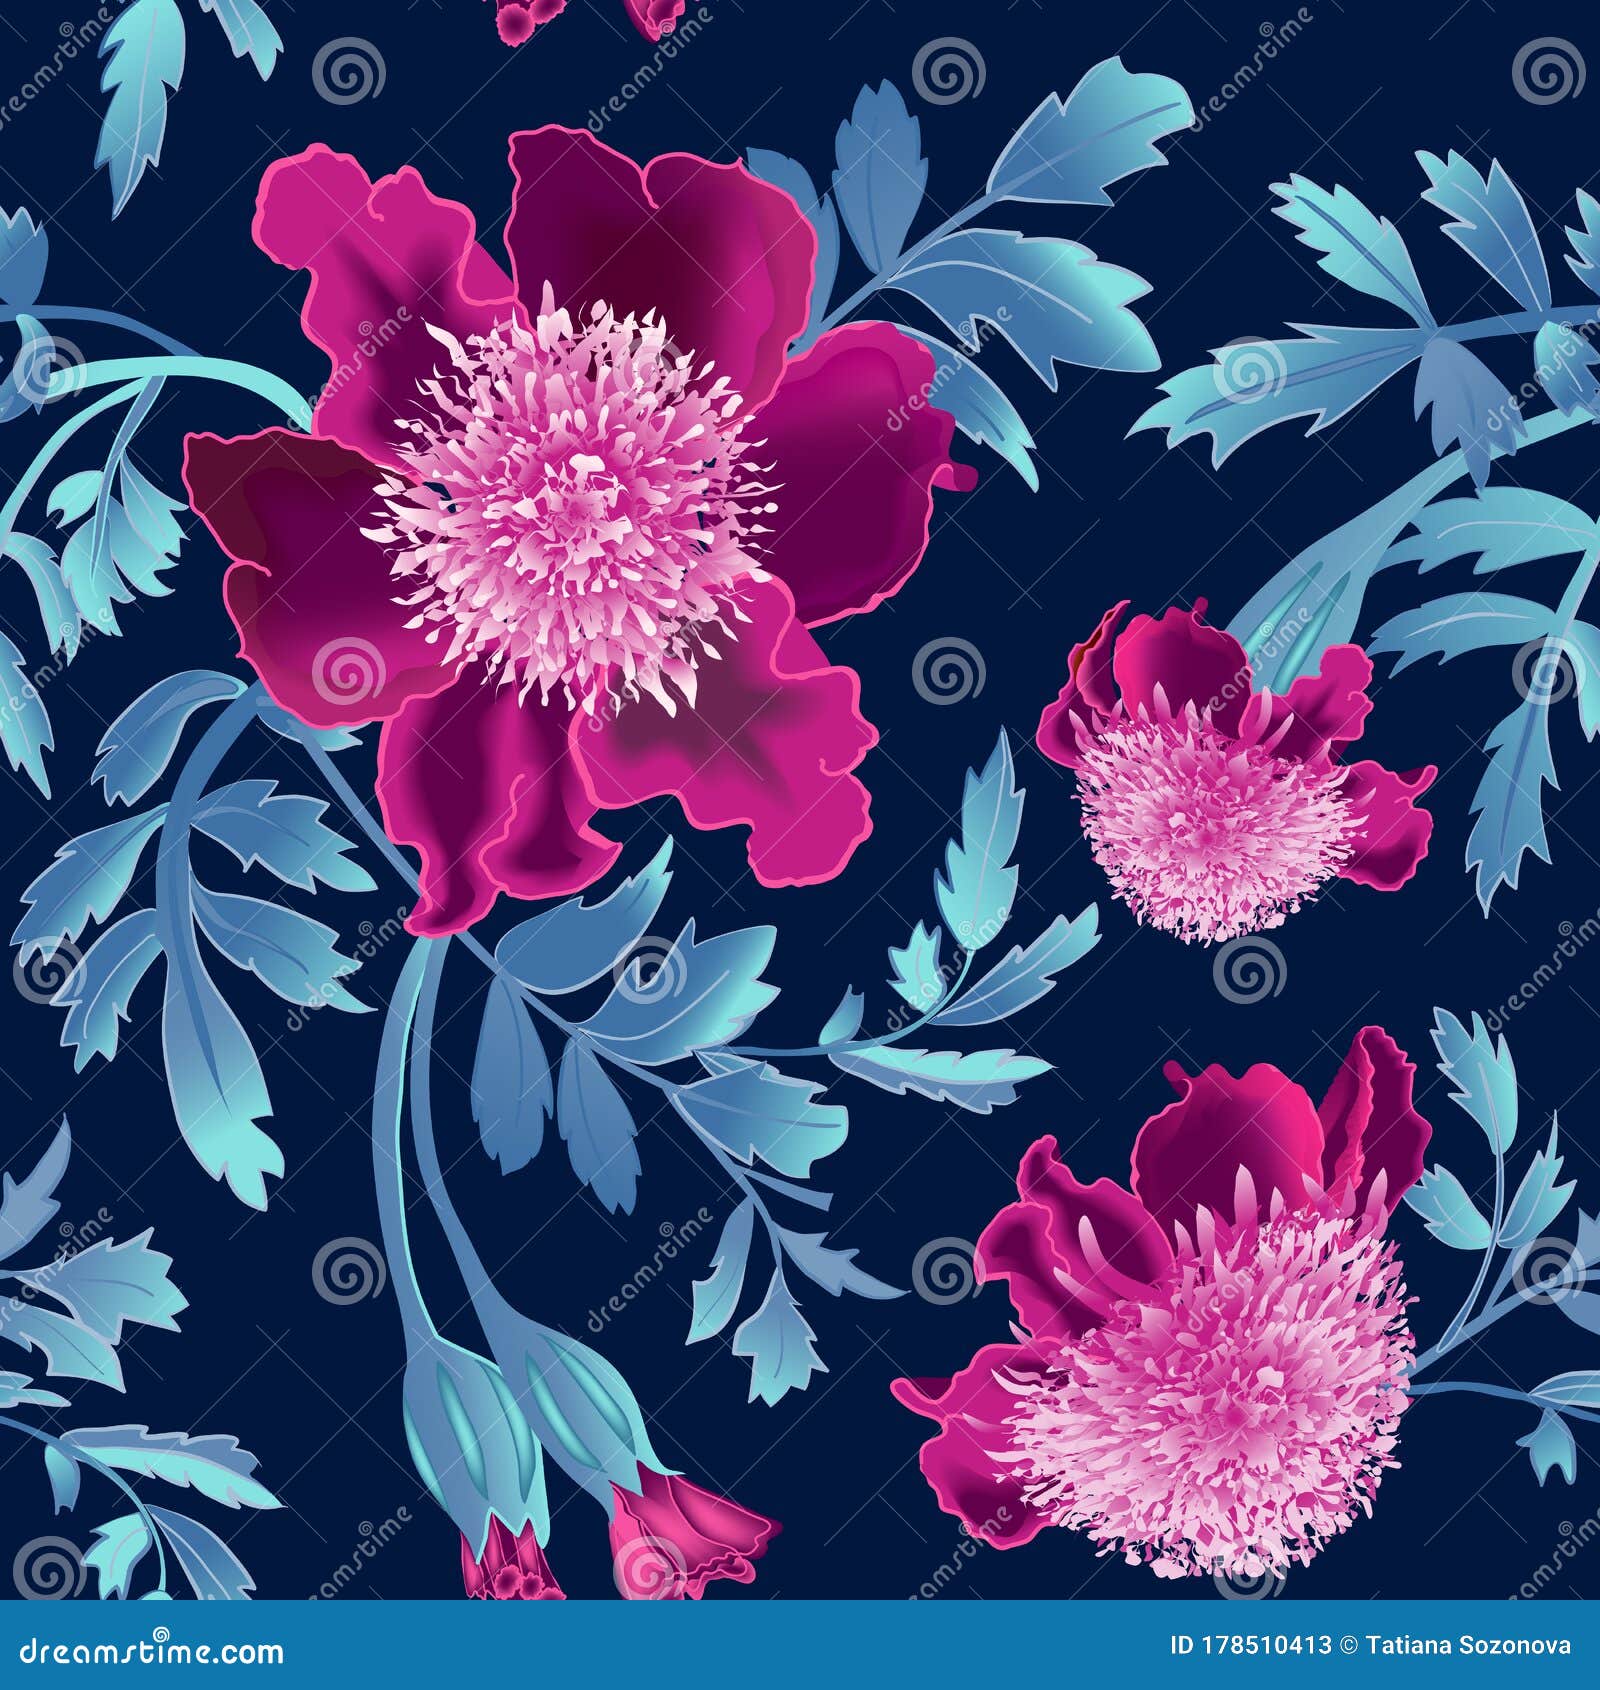 Những bông hoa hồng nóng bỏng trên nền navy blue sẽ khiến bạn trầm trồ ngắm nhìn. Hãy tưởng tượng những nụ hồng đua nhau nở rực rỡ giữa không gian lãng mạn và đầy sức sống, đem đến cho bạn cảm giác hạnh phúc và yêu đời.